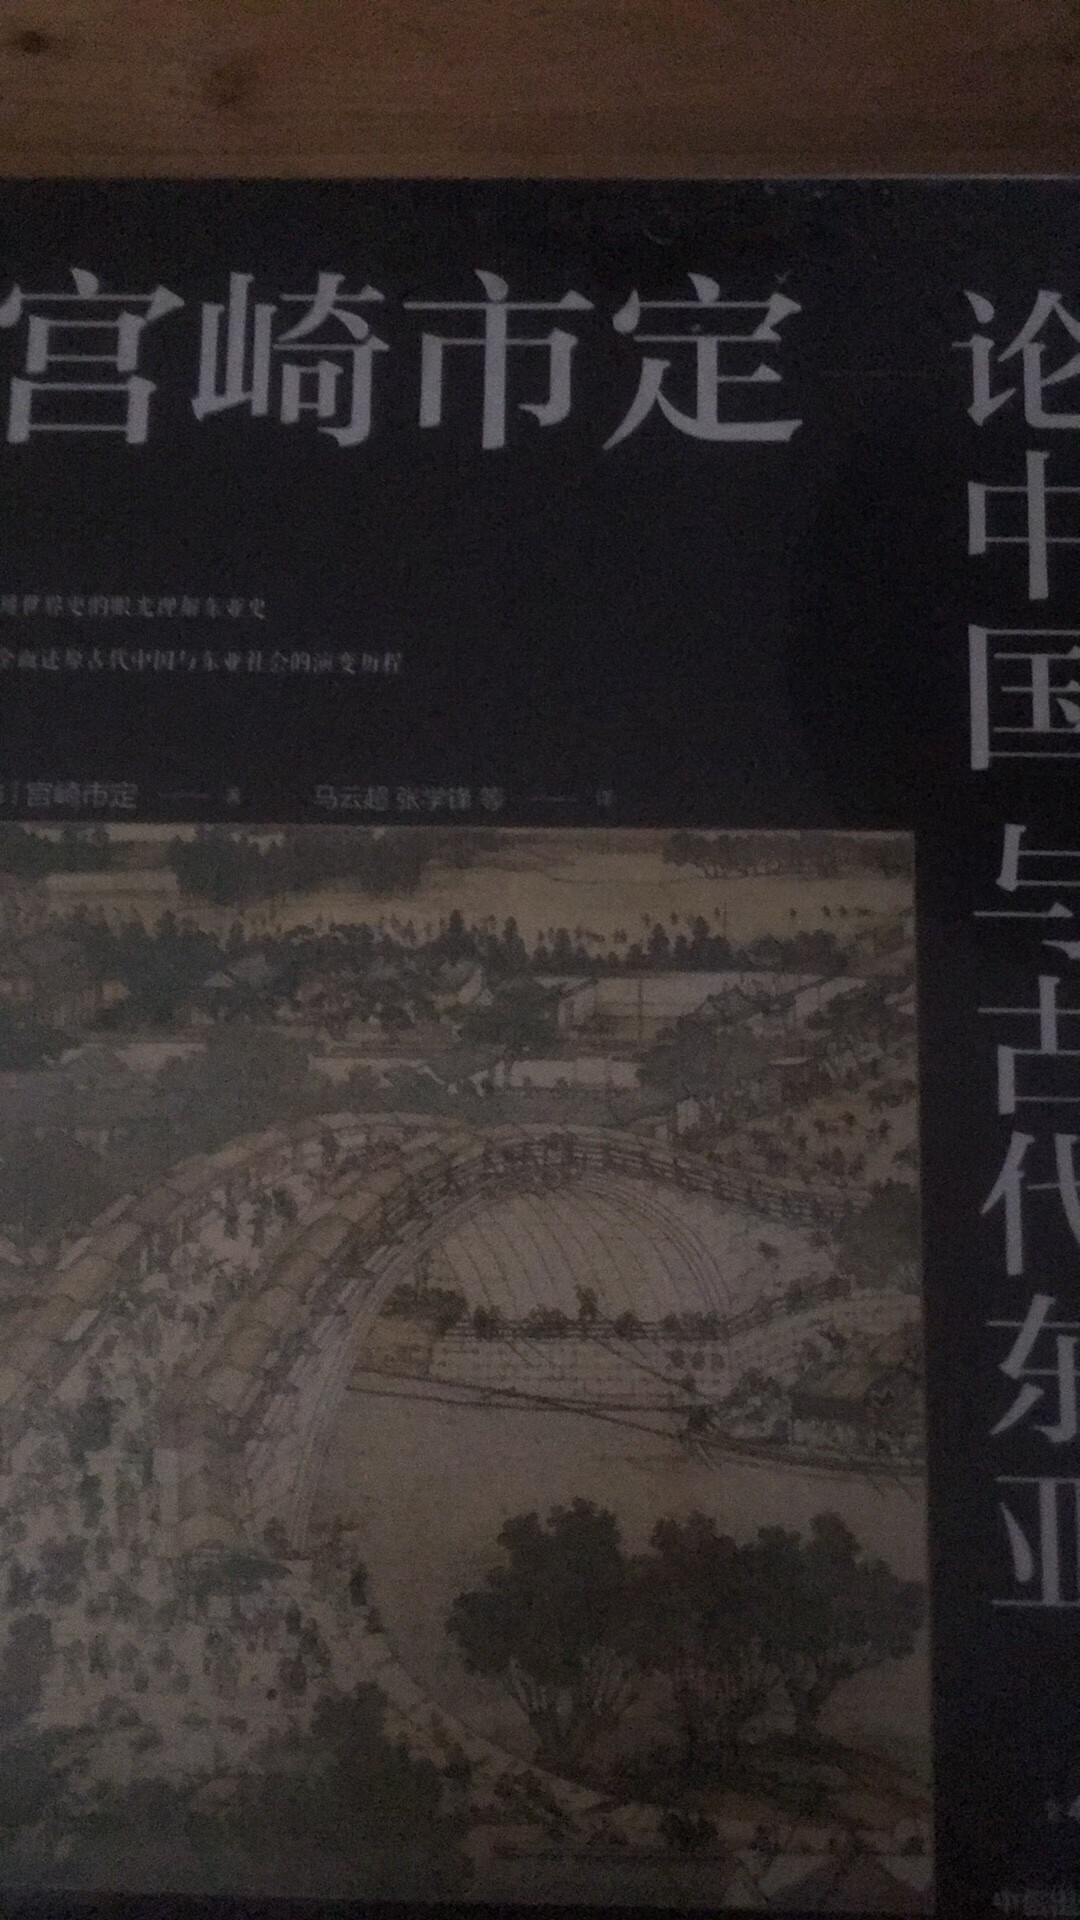 京都学派历史学集大成之作，宫崎市定经典作品，包括东洋古代史，迷一般的七支刀，宫崎市定解读史记等